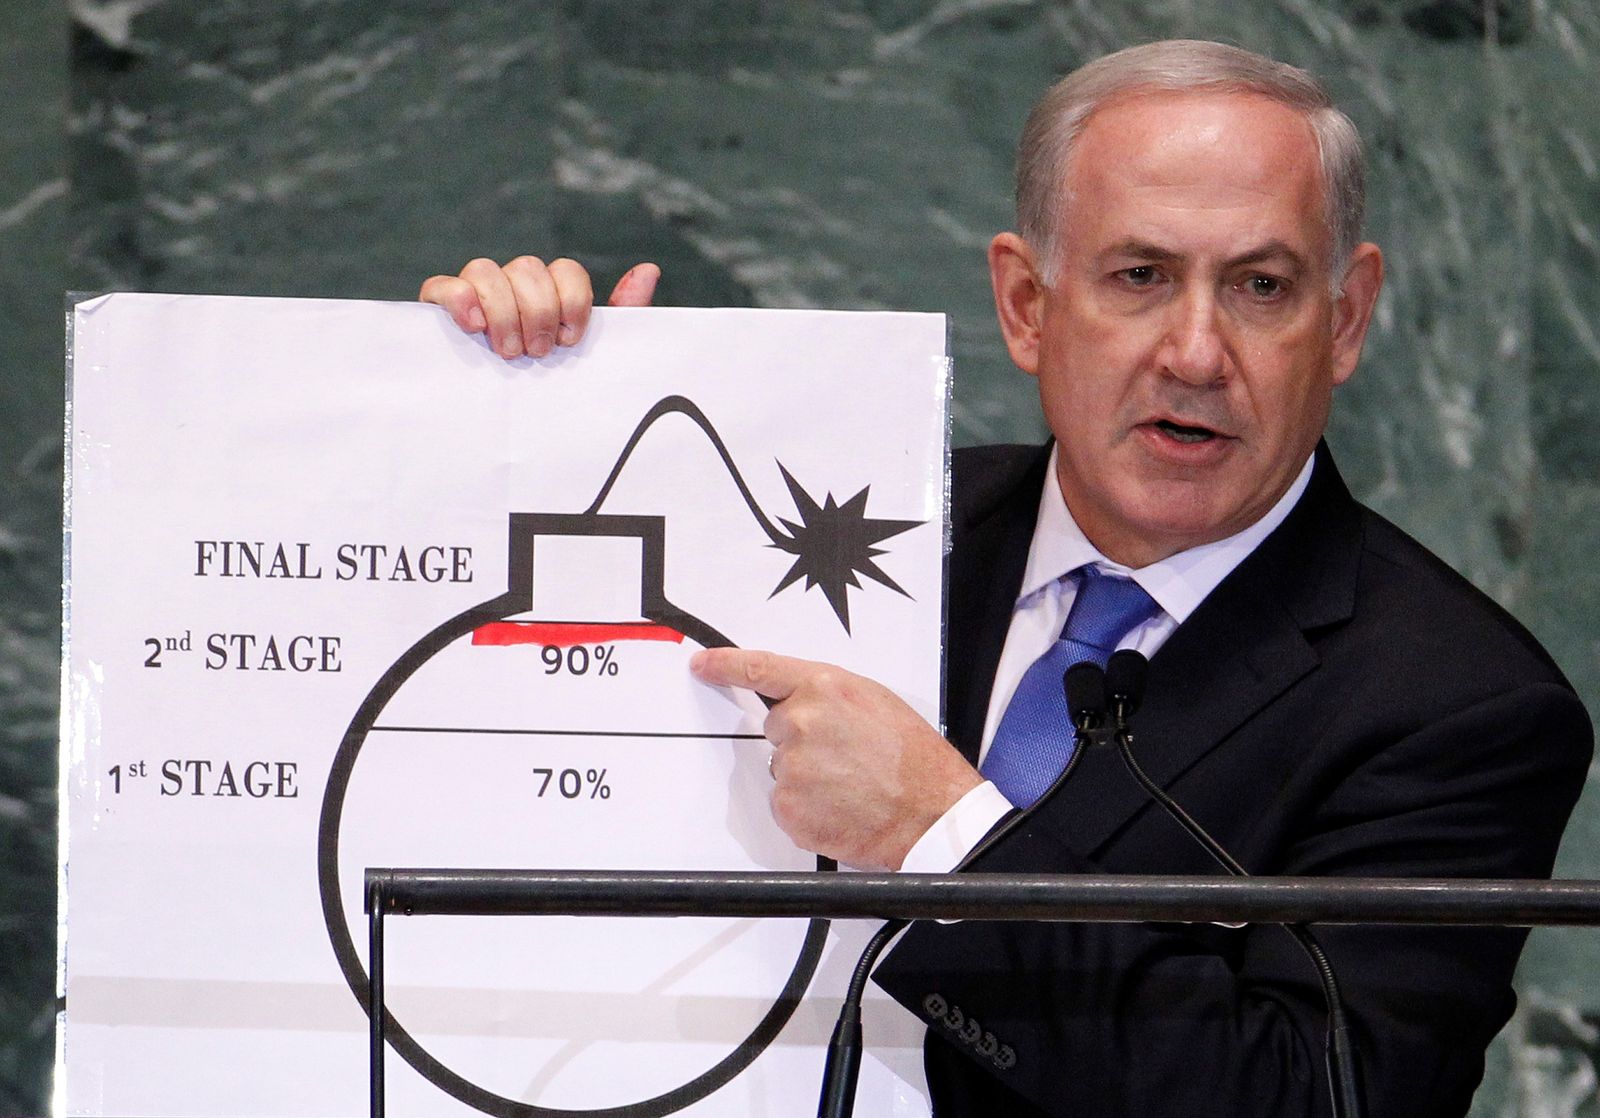  رئيس الوزراء الإسرائيلي بنيامين نتنياهو يشير إلى خط أحمر رسمه على رسم قنبلة لتمثيل برنامج إيران النووي أثناء خطابه أمام الجمعية العامة للأمم المتحدة، نيويورك، سبتمبر 2012 - REUTERS